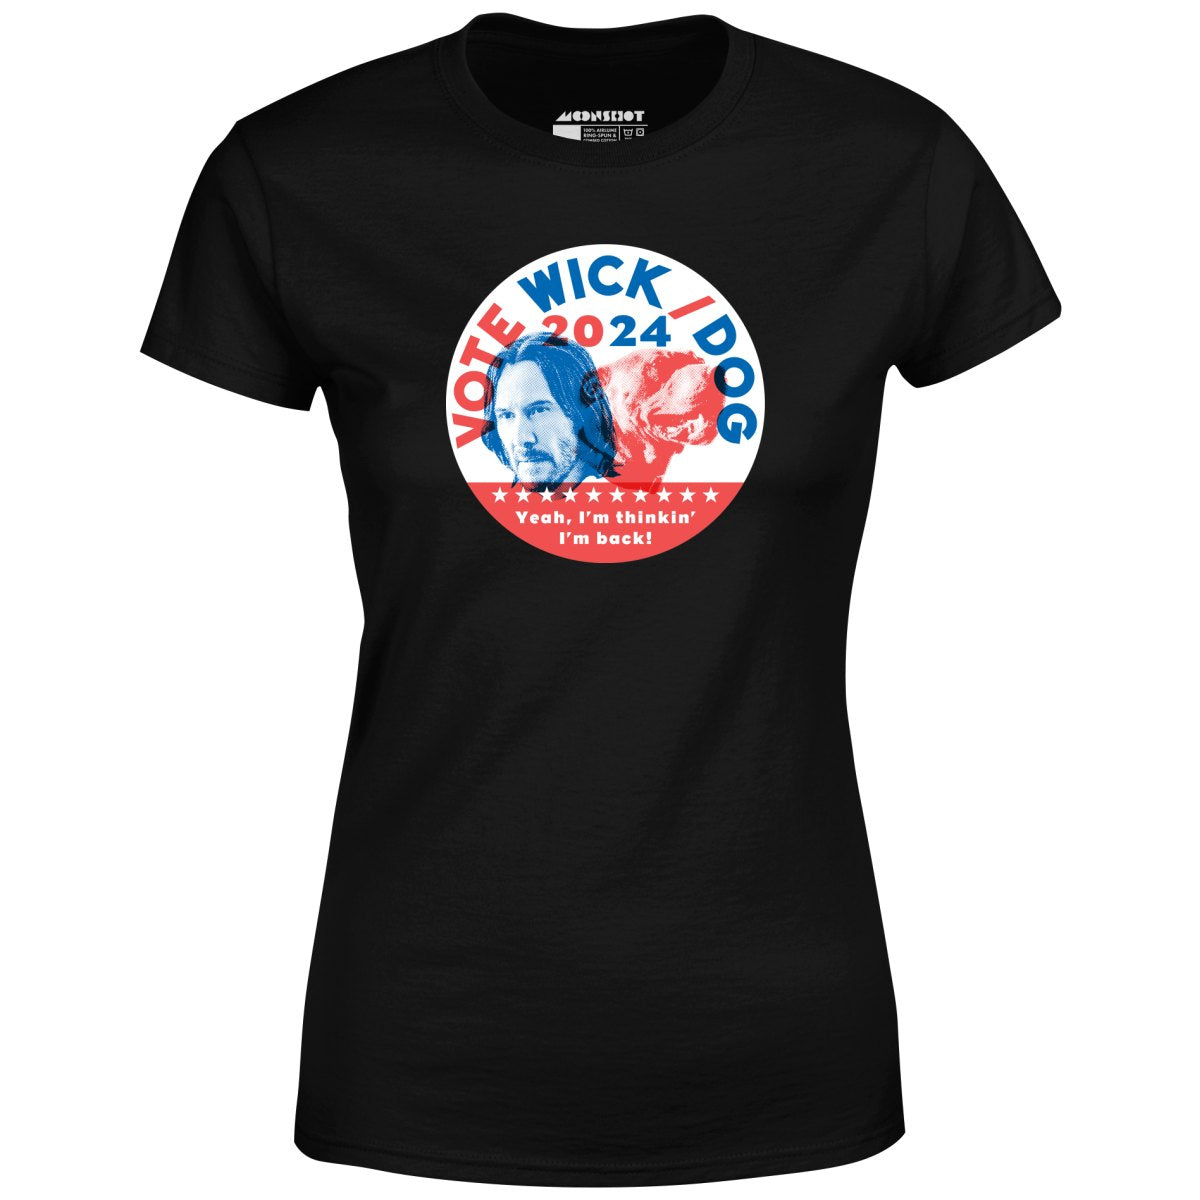 Wick Dog 2024 - Women's T-Shirt